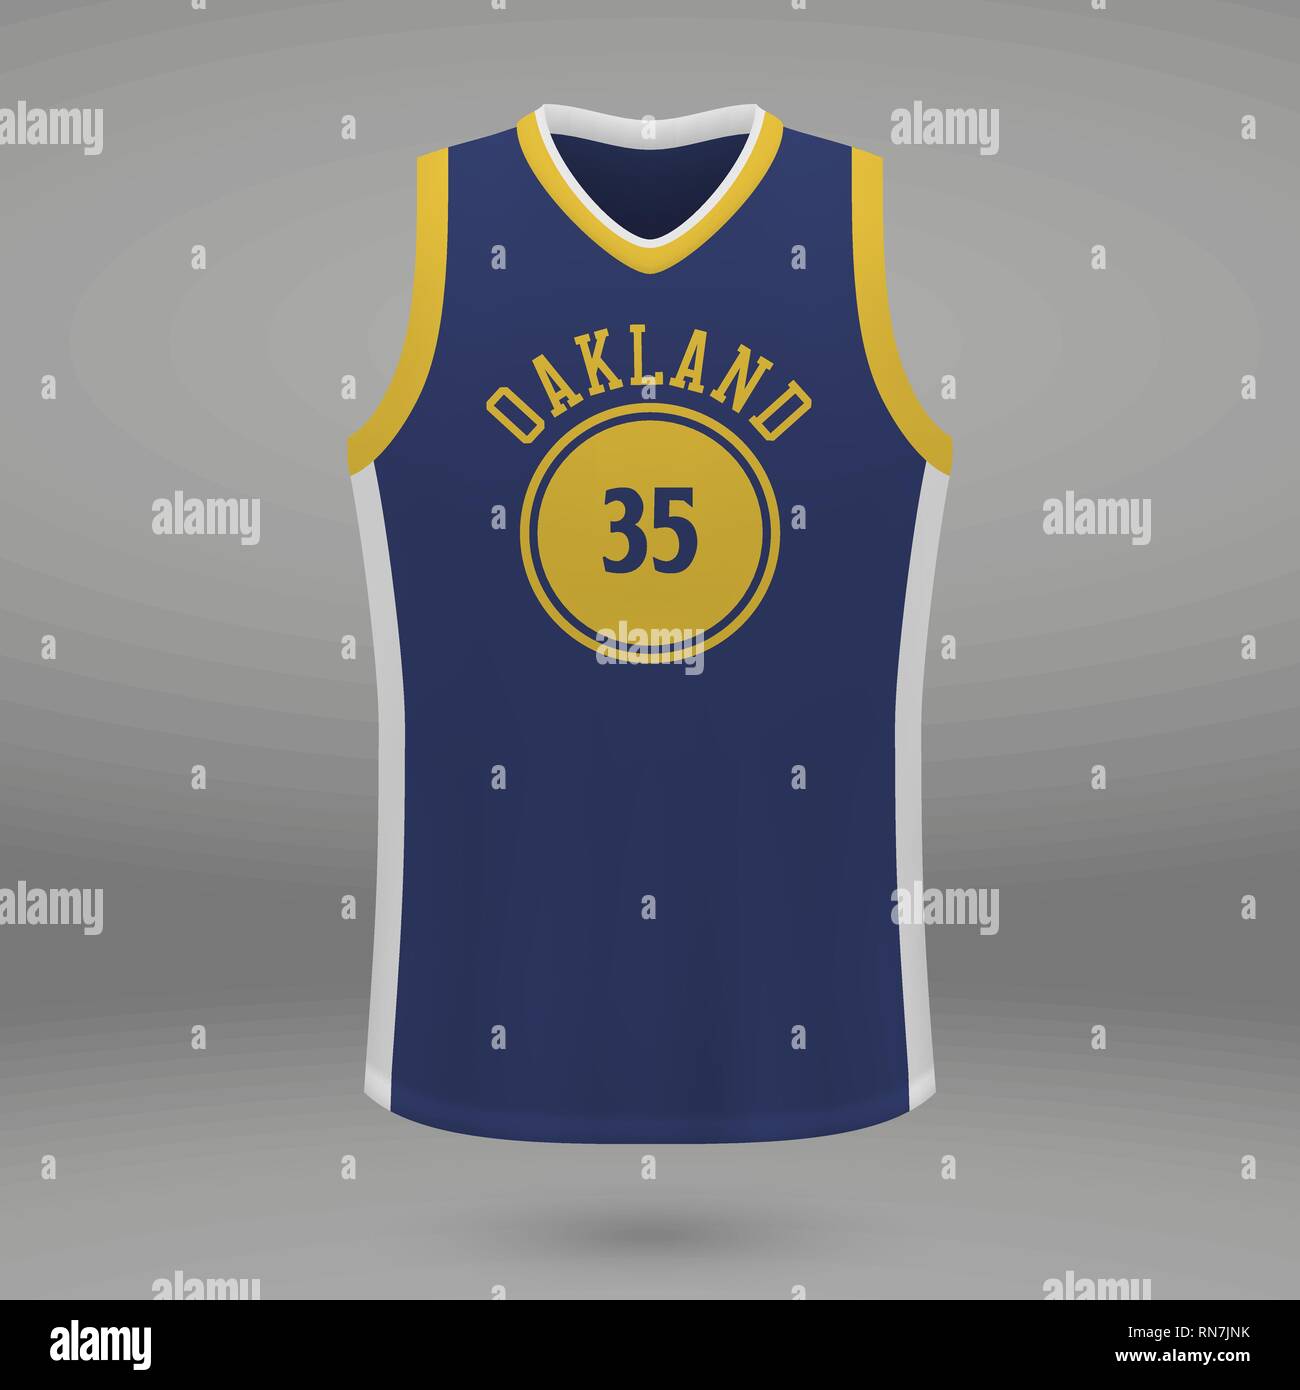 Sport realistico shirt Golden State Warriors jersey modello per kit di pallacanestro. Illustrazione Vettoriale Illustrazione Vettoriale